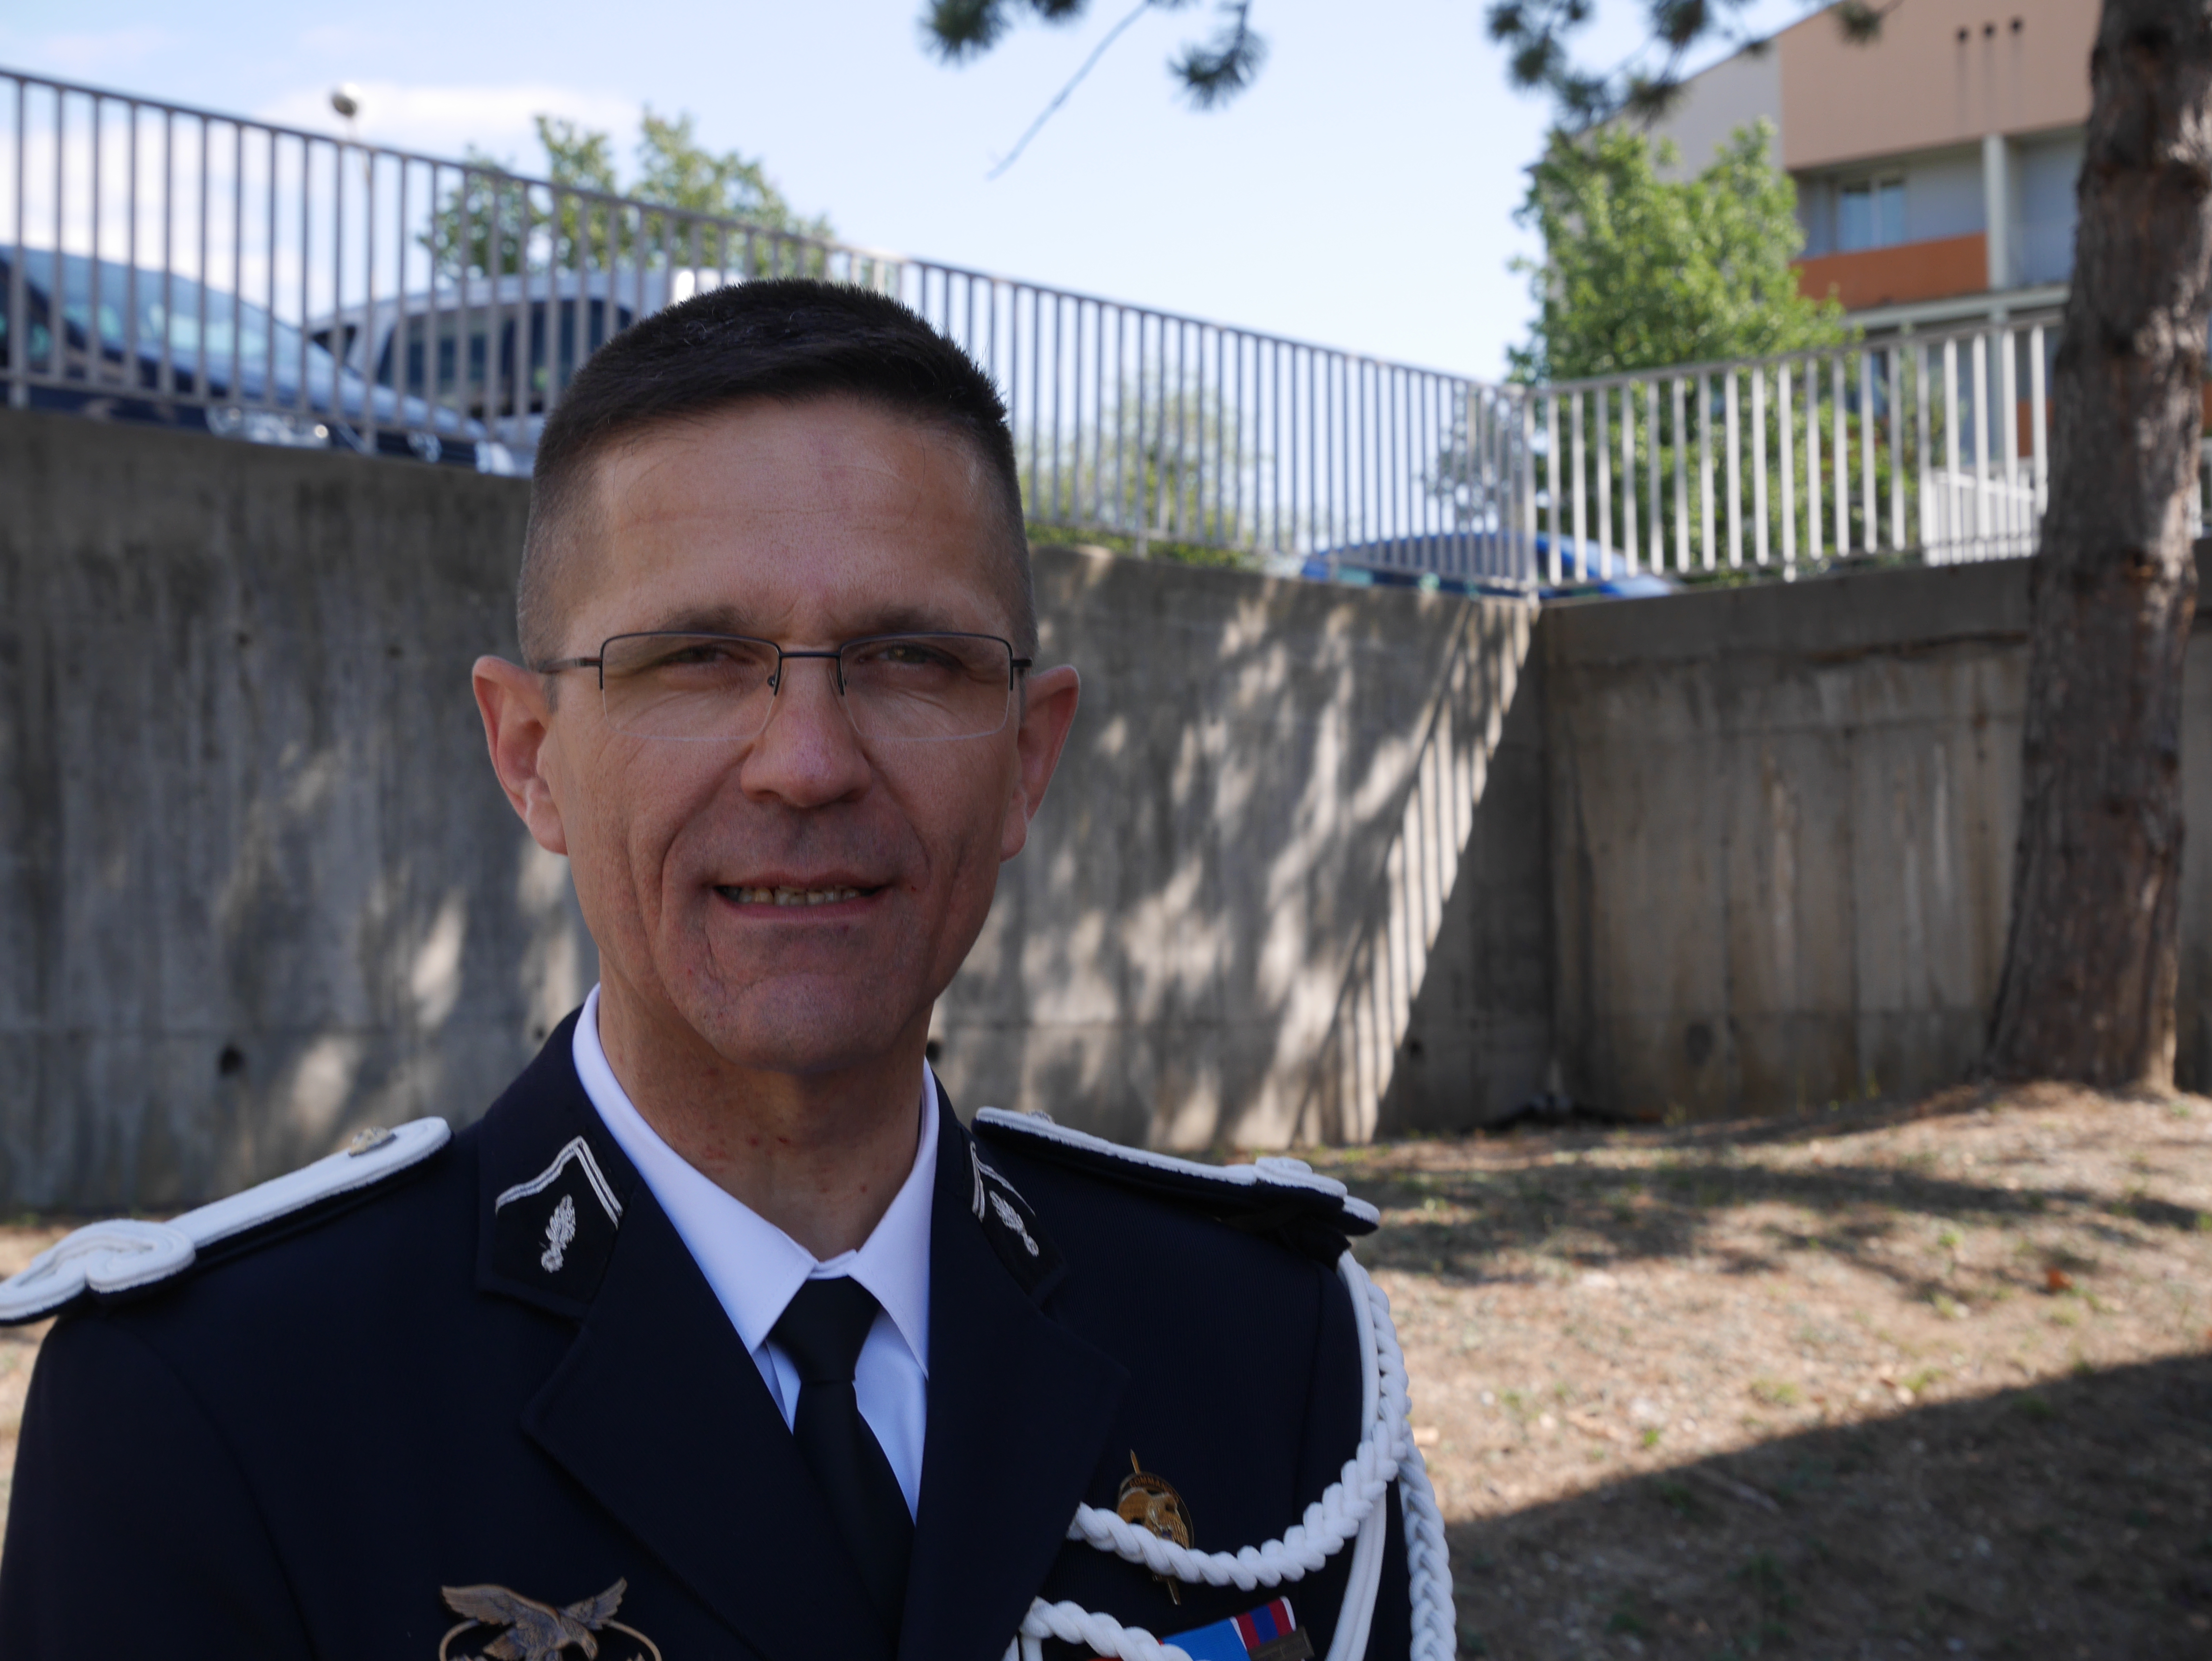 Un nouveau commandant pour le groupement de gendarmerie des Alpes de Haute Provence.